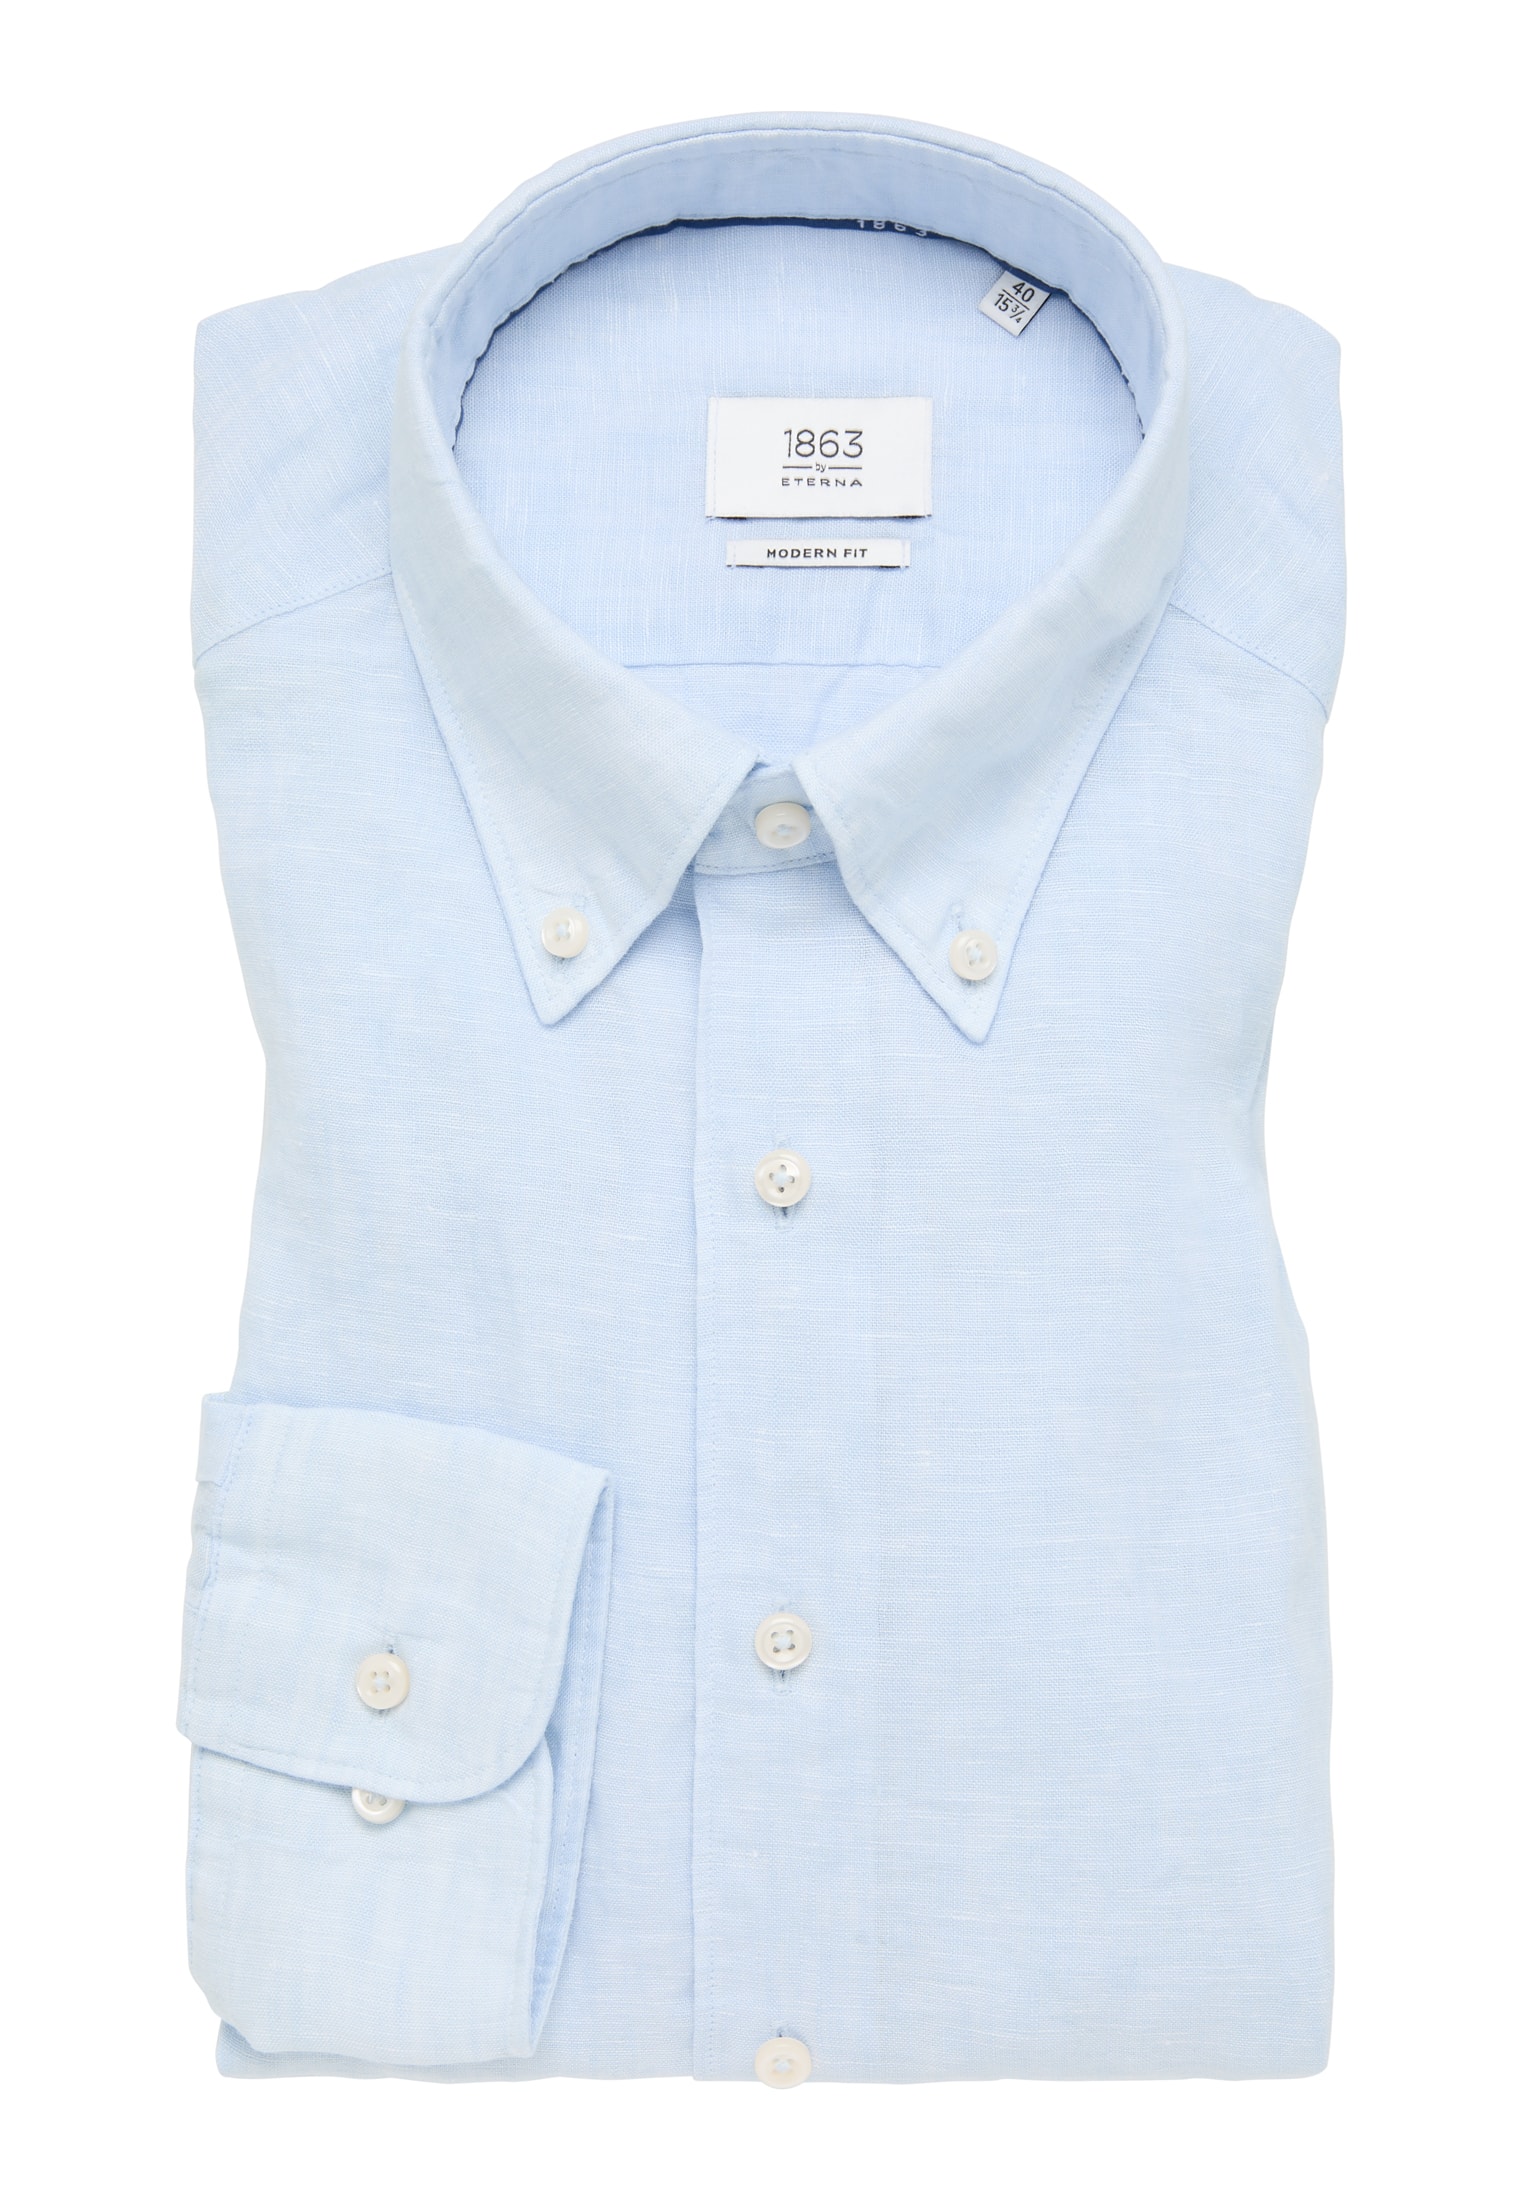 long | plain sleeve | blue FIT light Shirt 44 1SH11902-01-11-44-1/1 light | blue in | MODERN